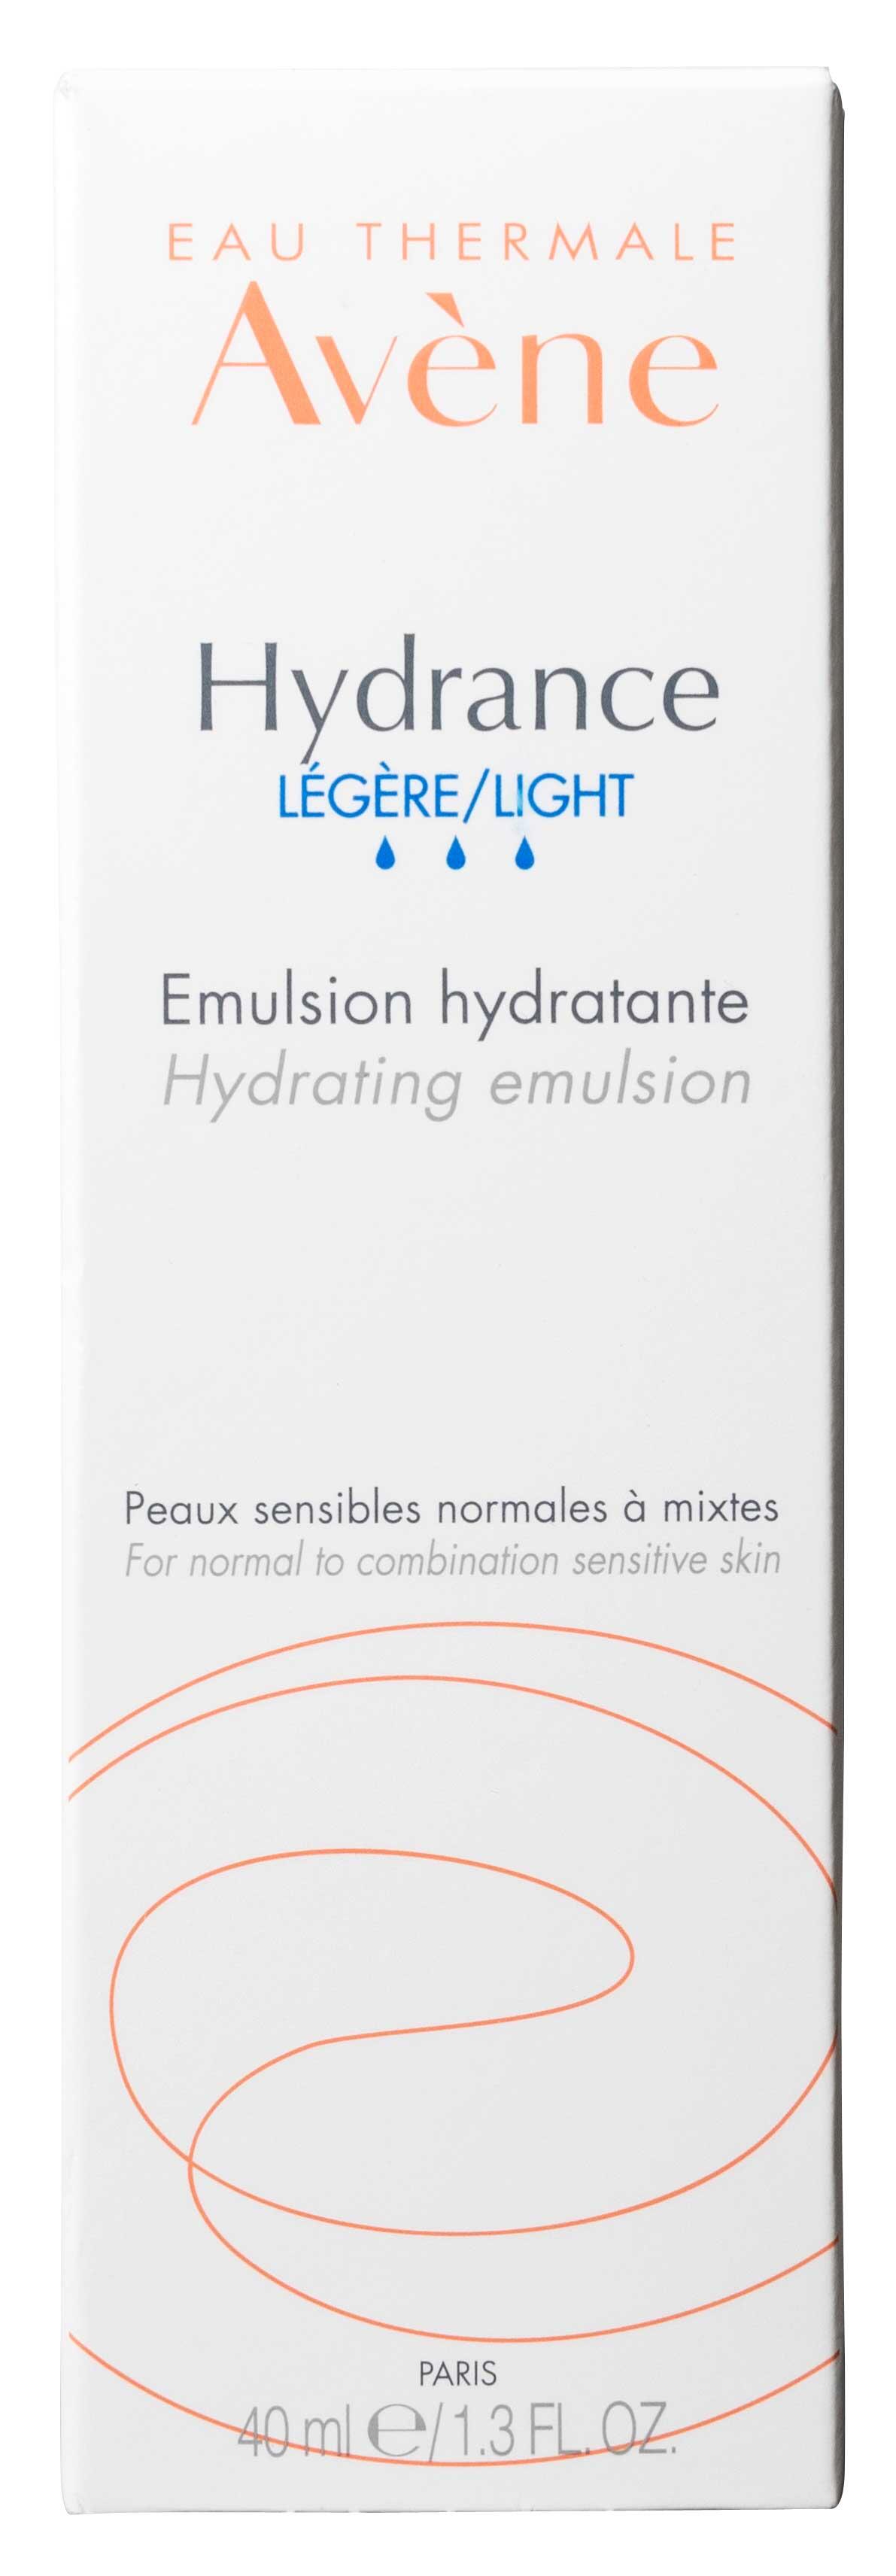 Hydrance light hydrating emulsion Avène